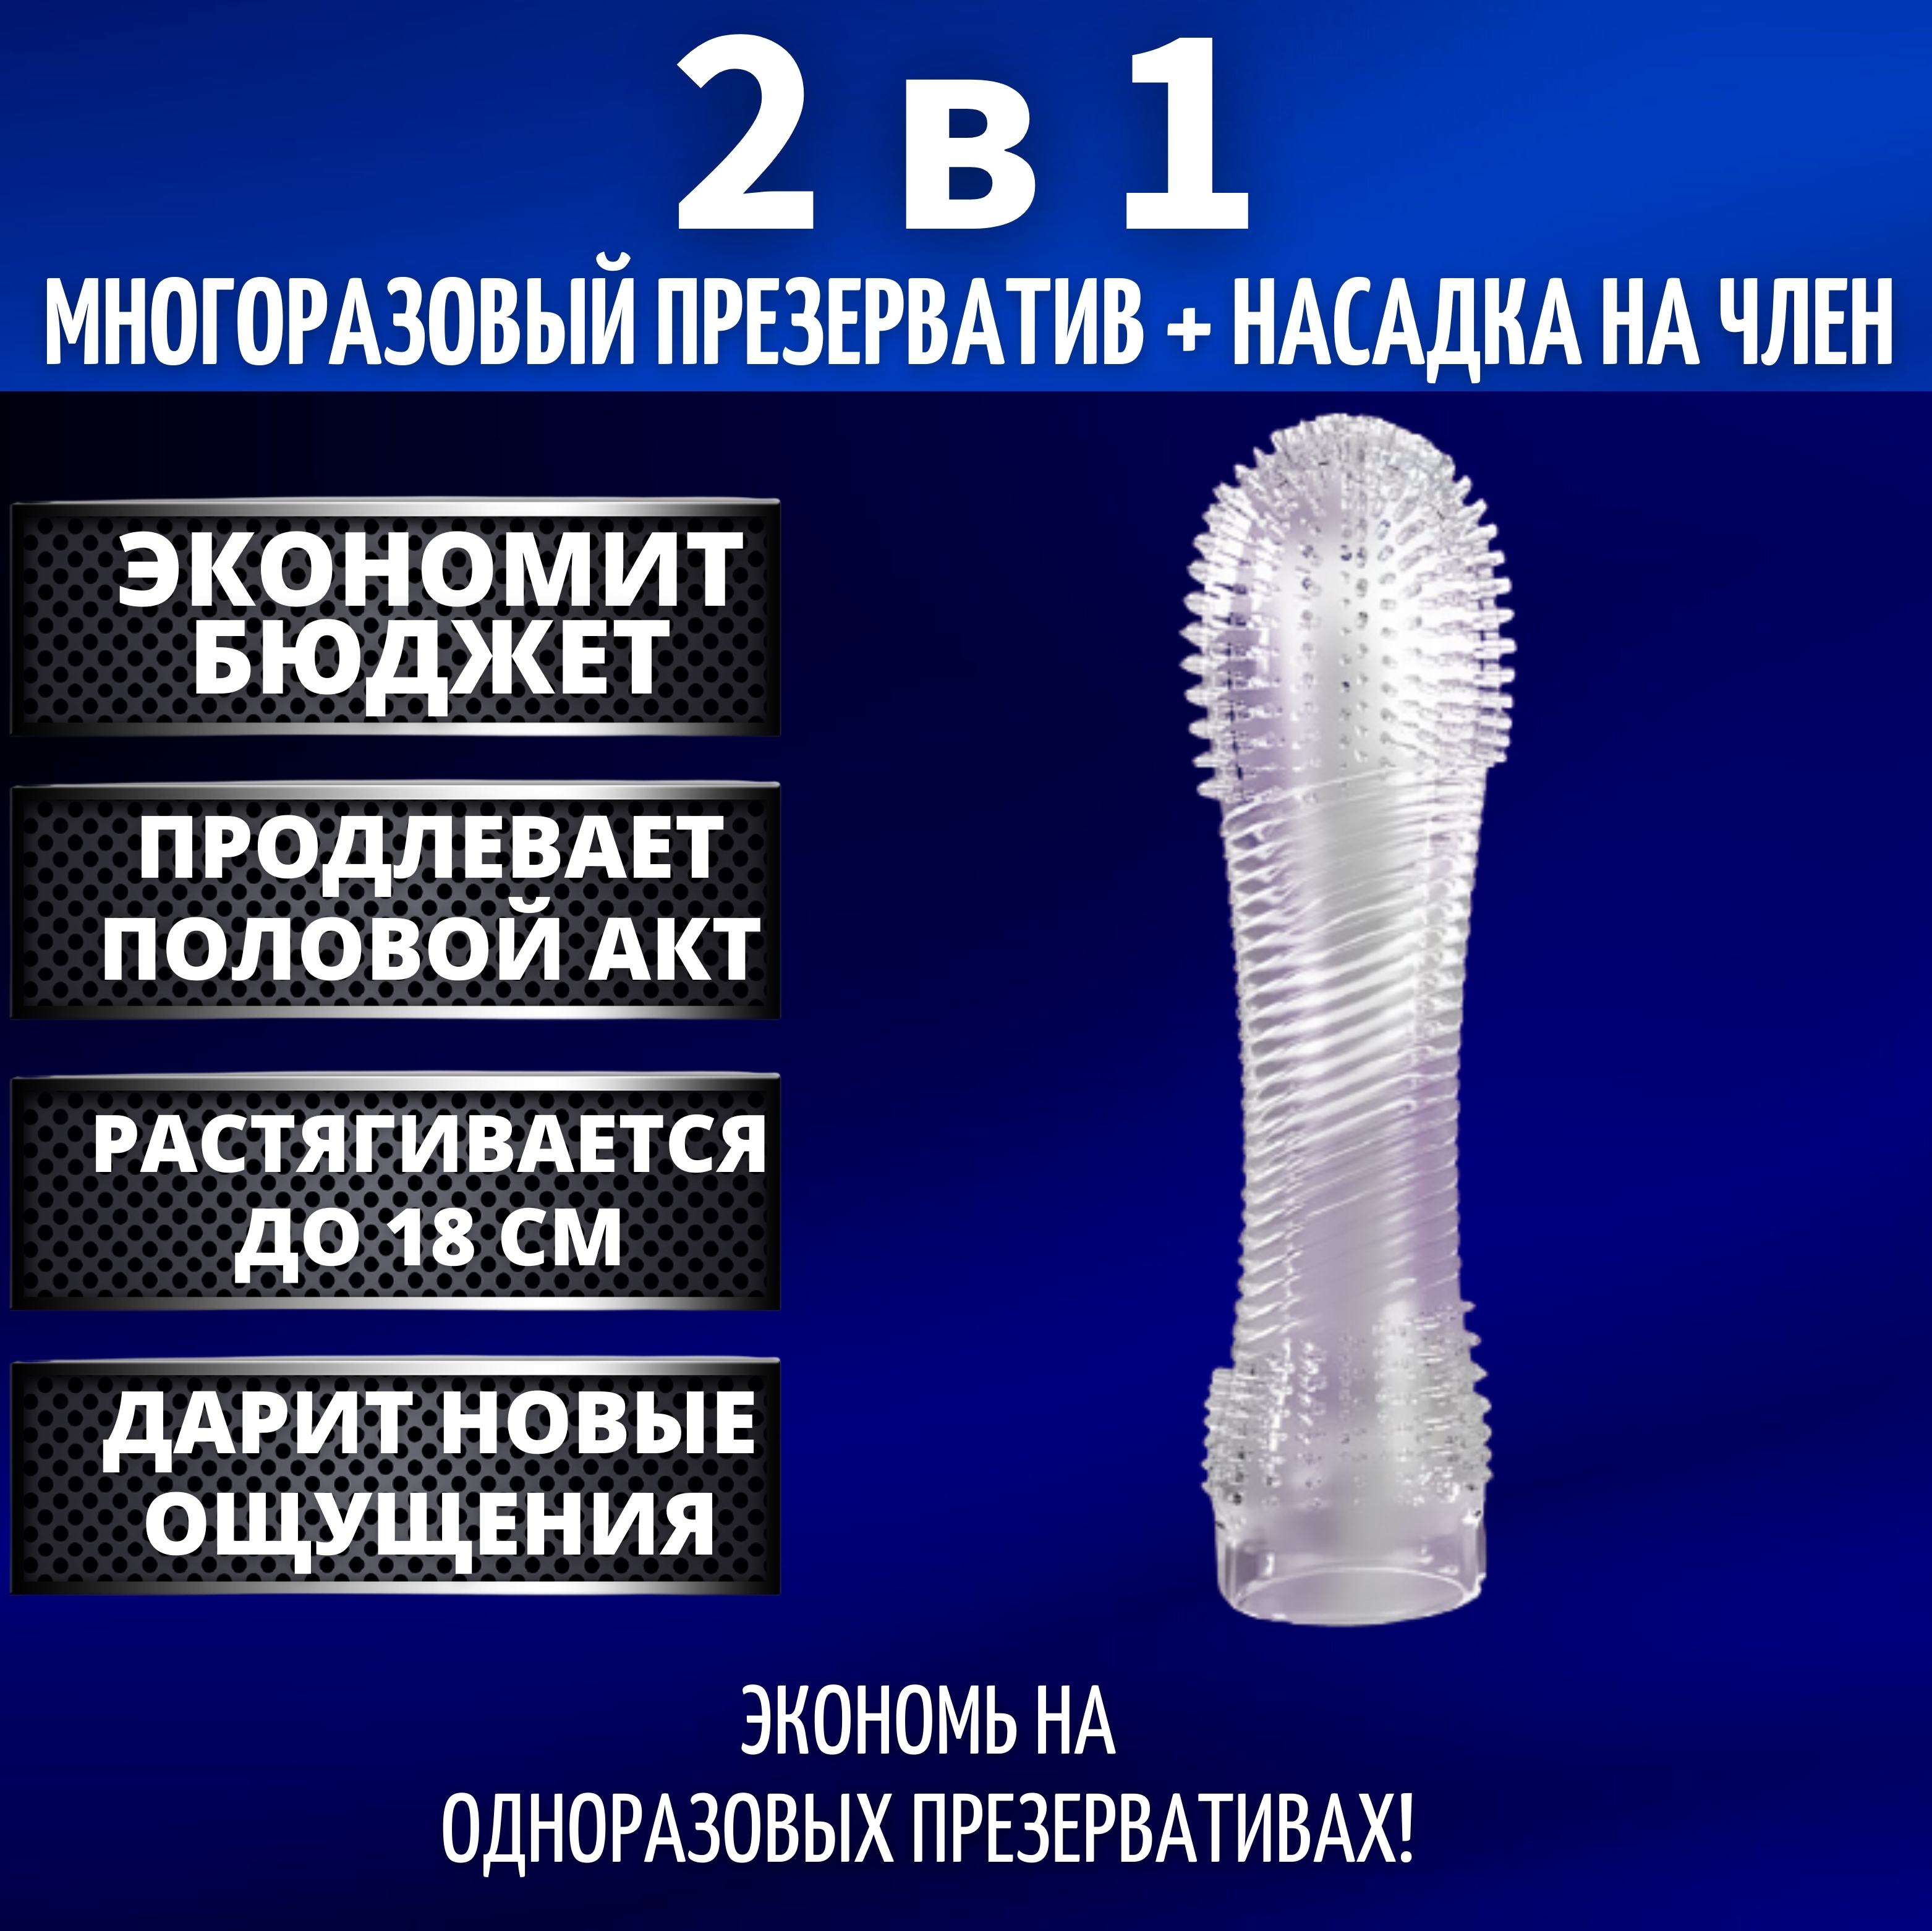 Игры с презервативом порно видео на эвакуатор-магнитогорск.рф